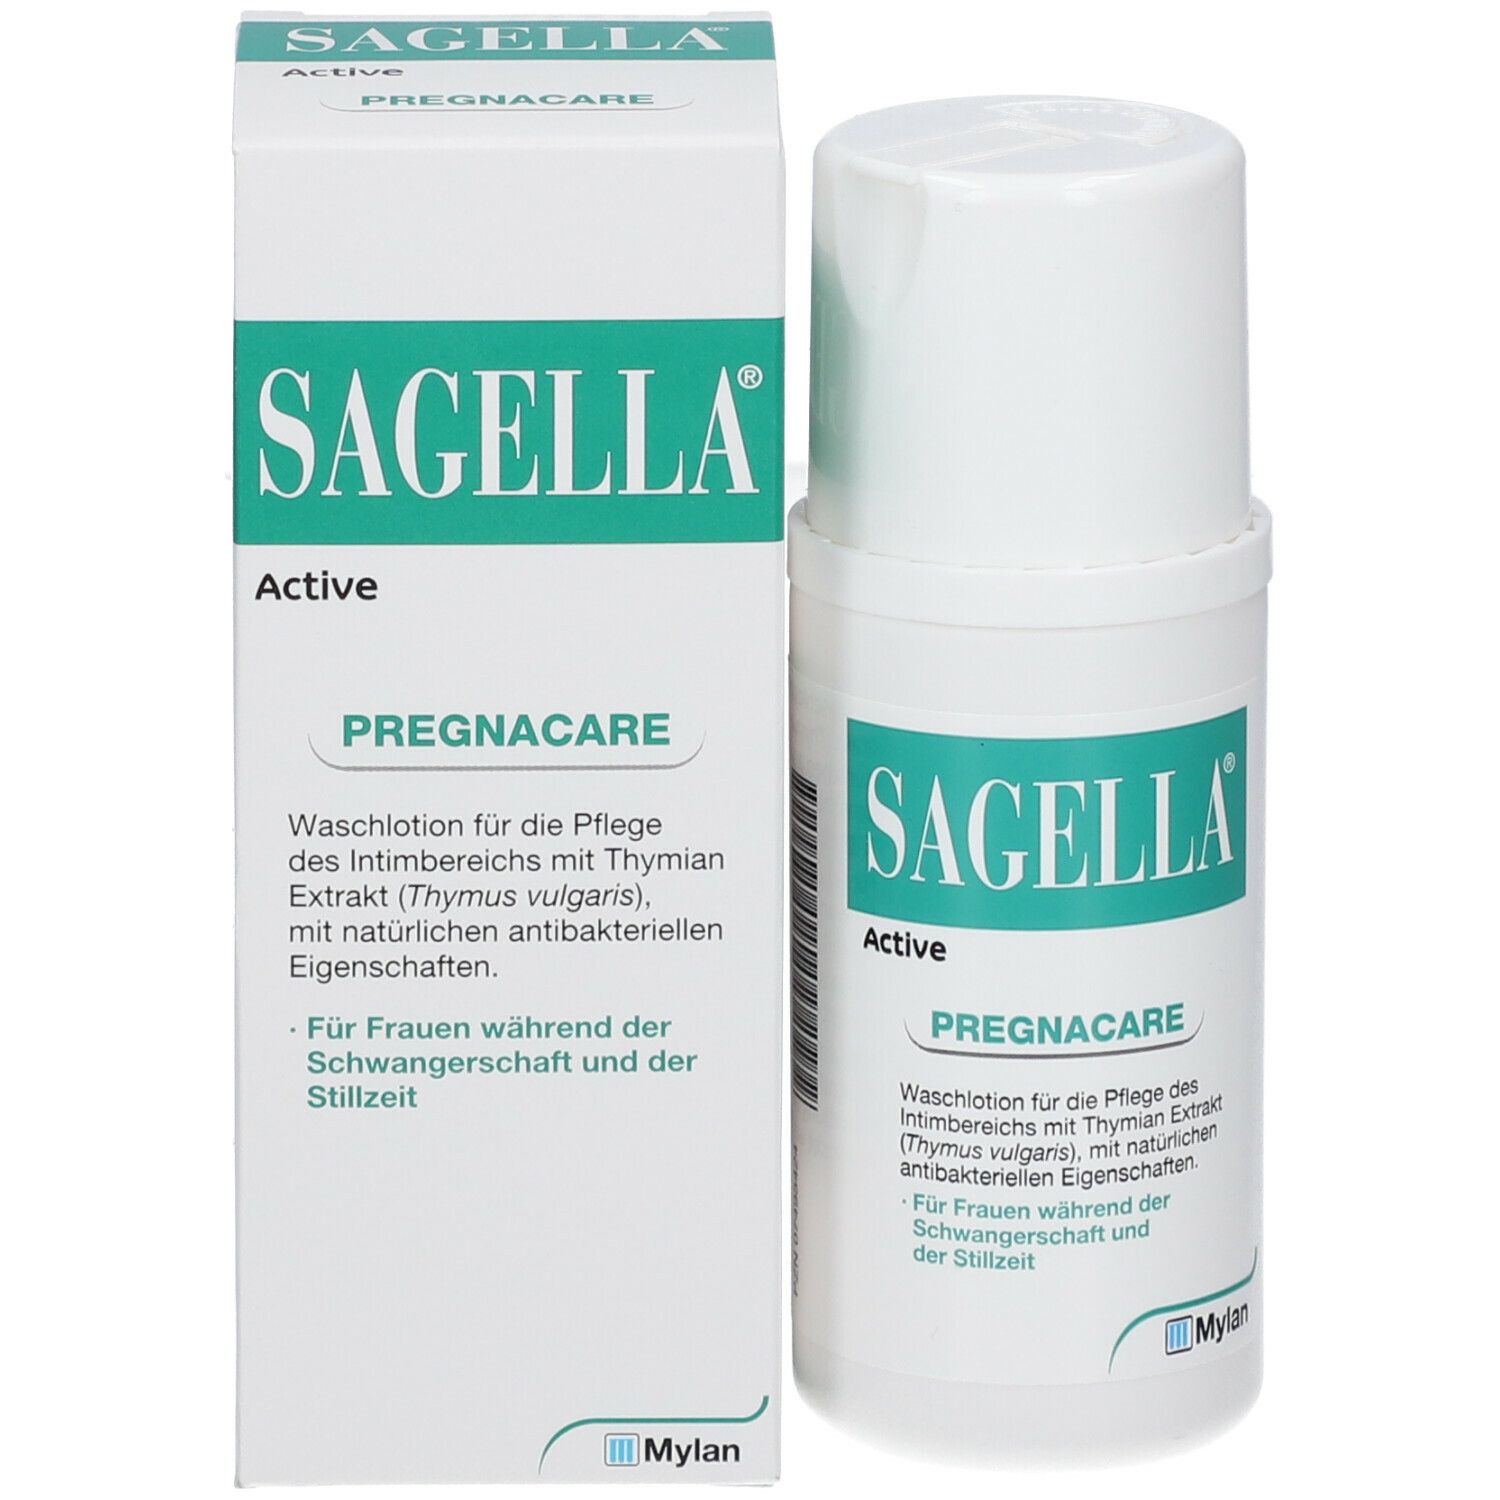 SAGELLA Active - PREGNACARE: Seifenfreie Intimwaschlotion für Frauen während und nach der Schwangerschaft